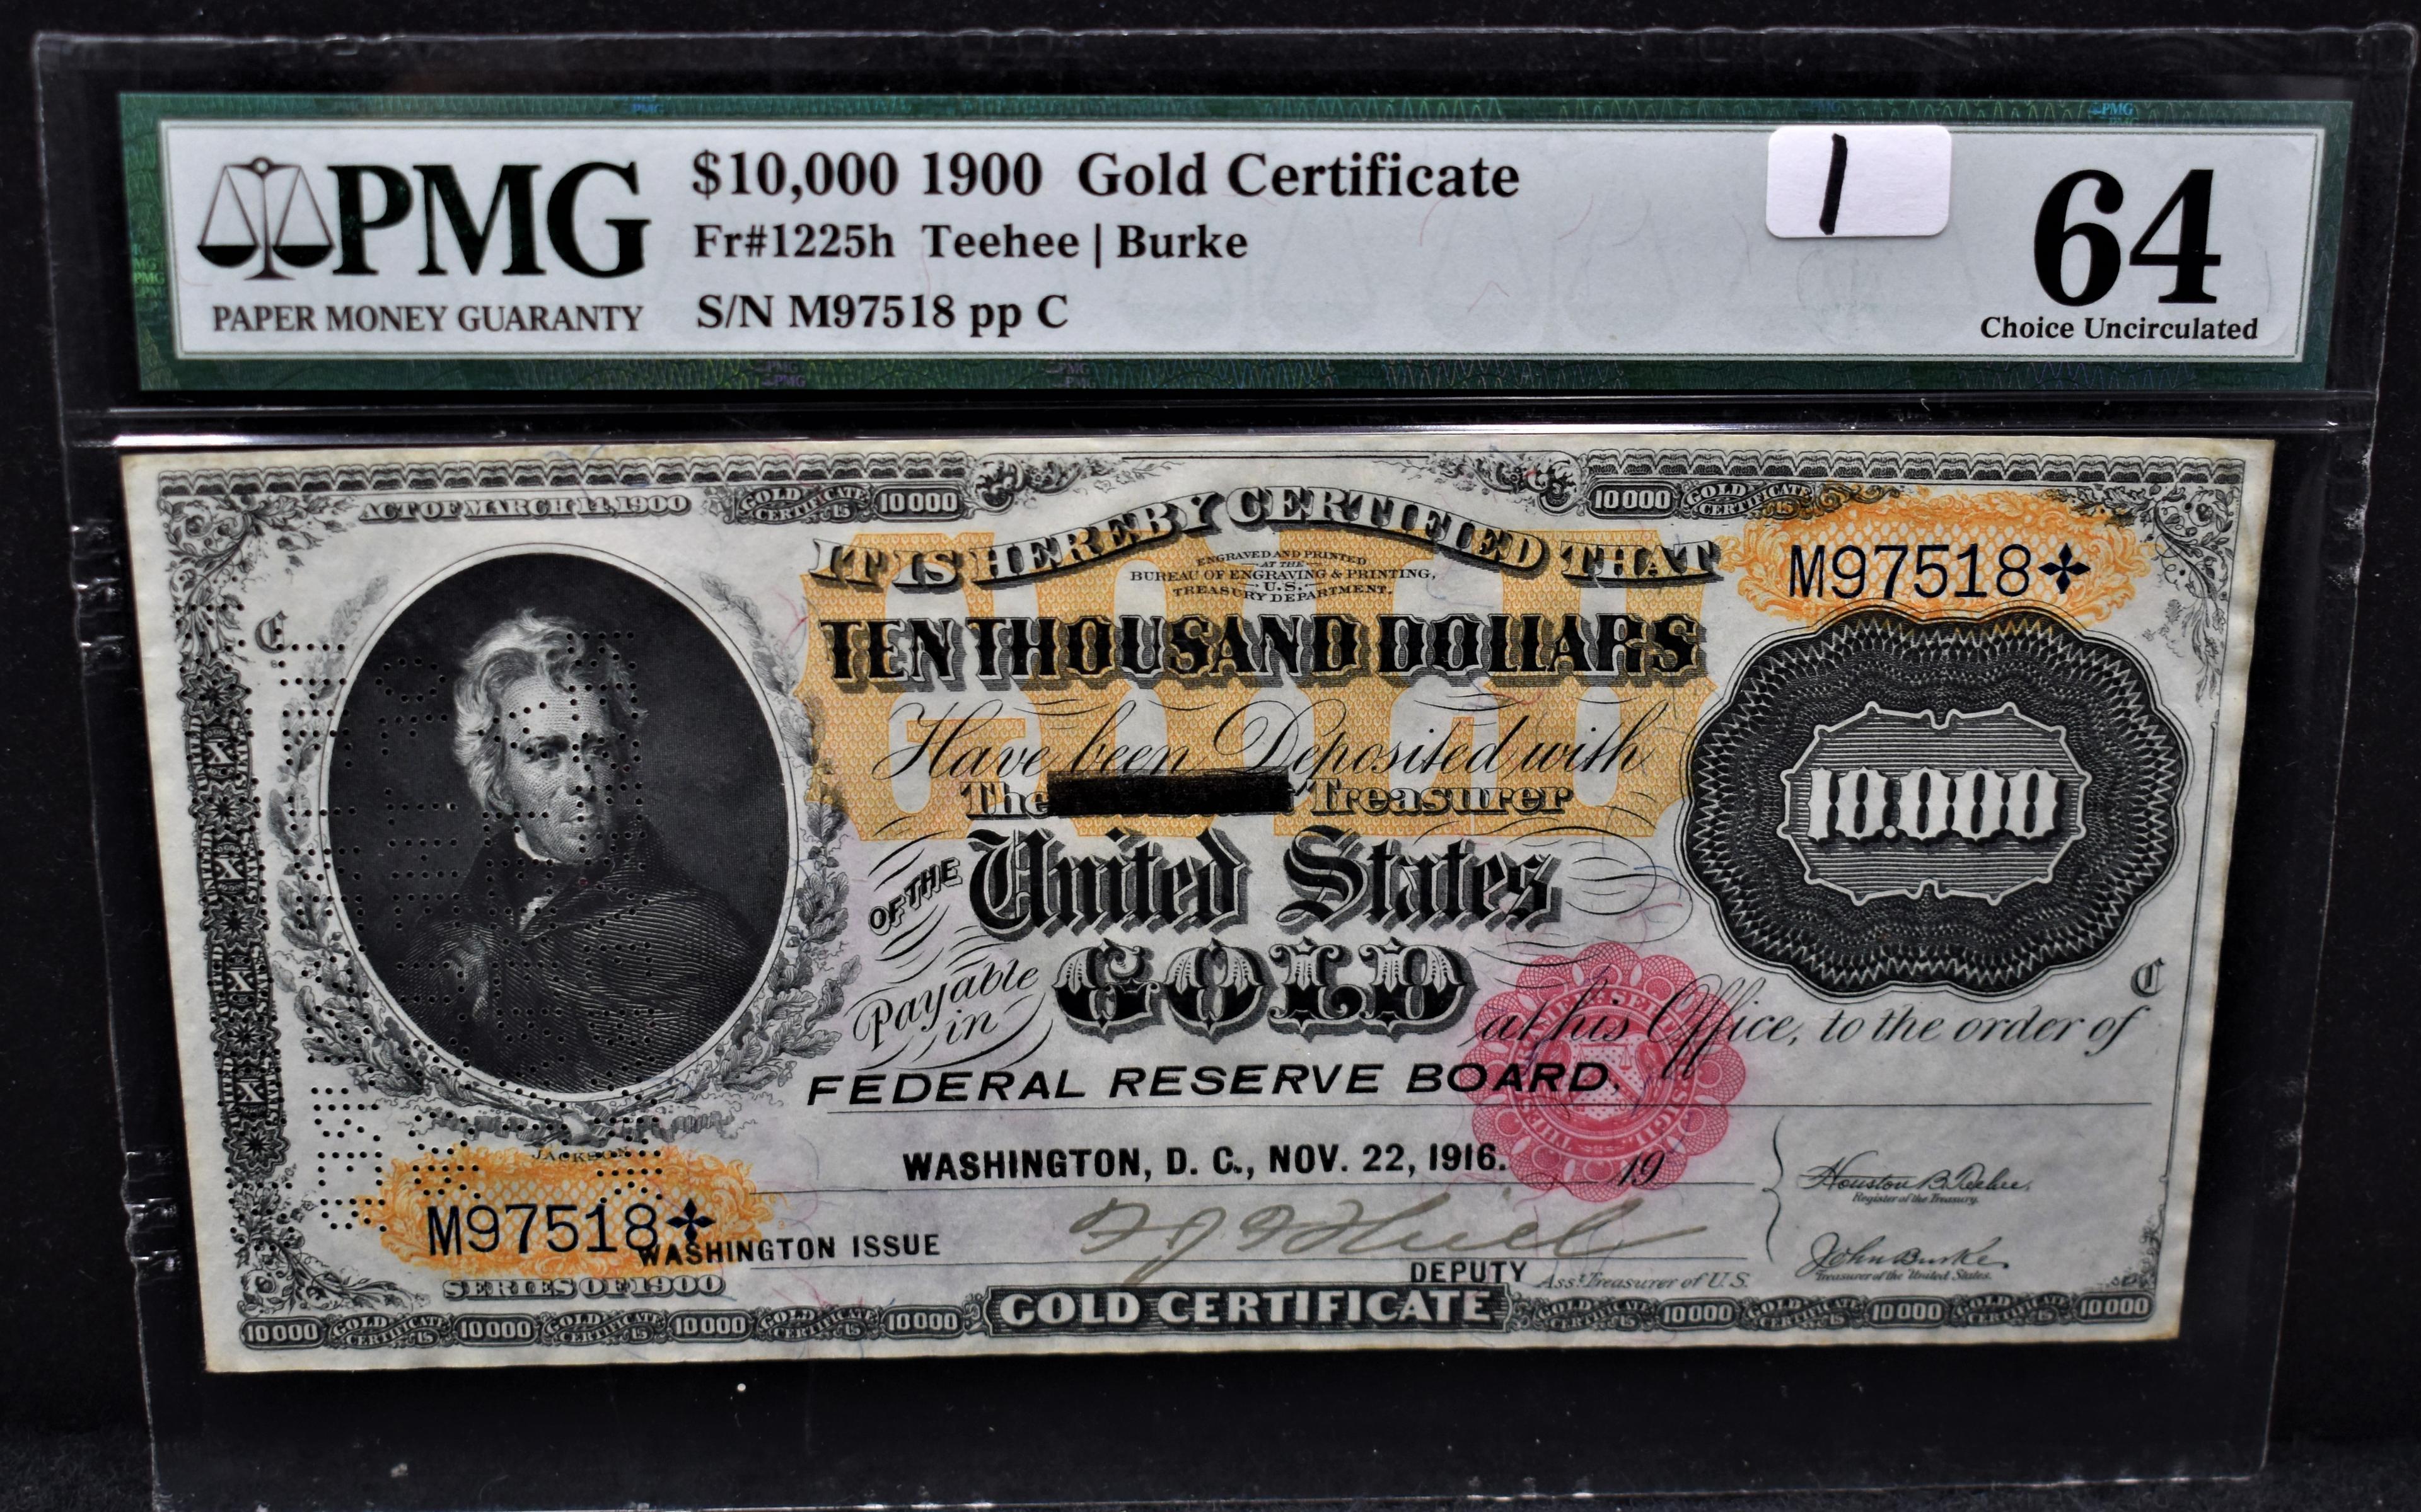 RARE 1900 $10,000 GOLD CERTIFICATE PMG CU64